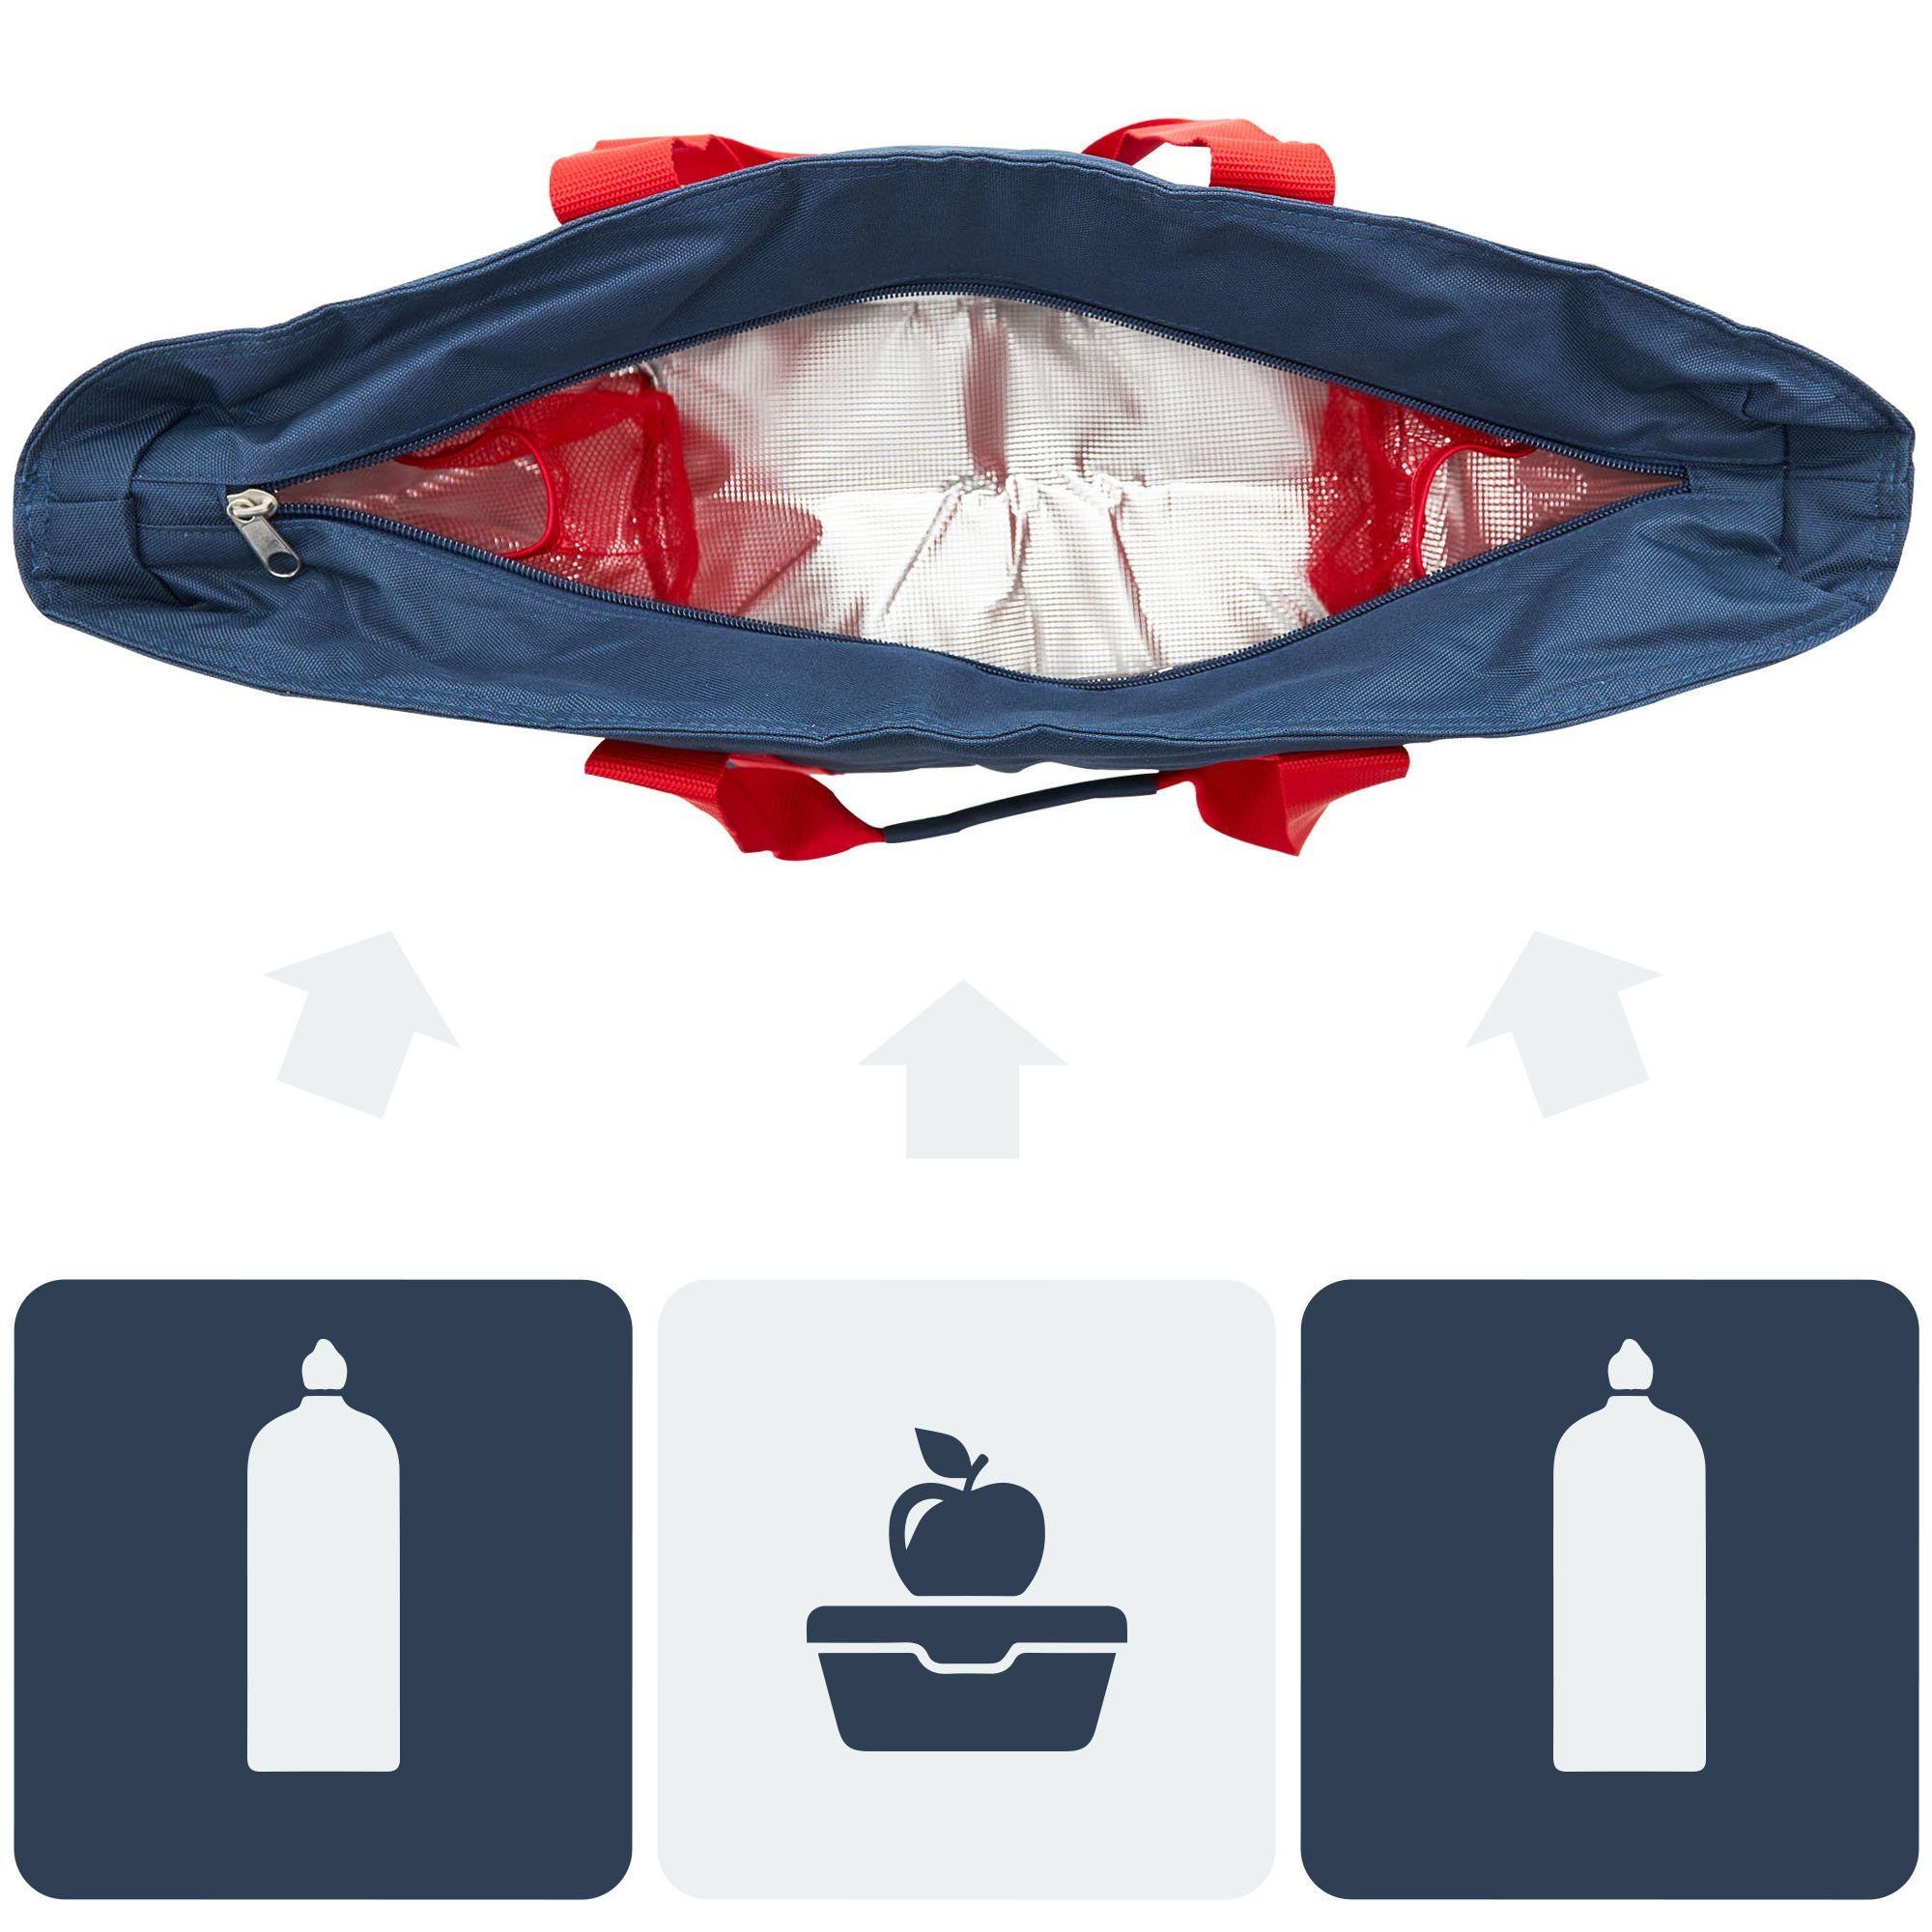 Flaschenfächer Kühlfunktion achilles Freizeittasche / navy mit rot mit Einkaufsshopper Shopper-Tasche